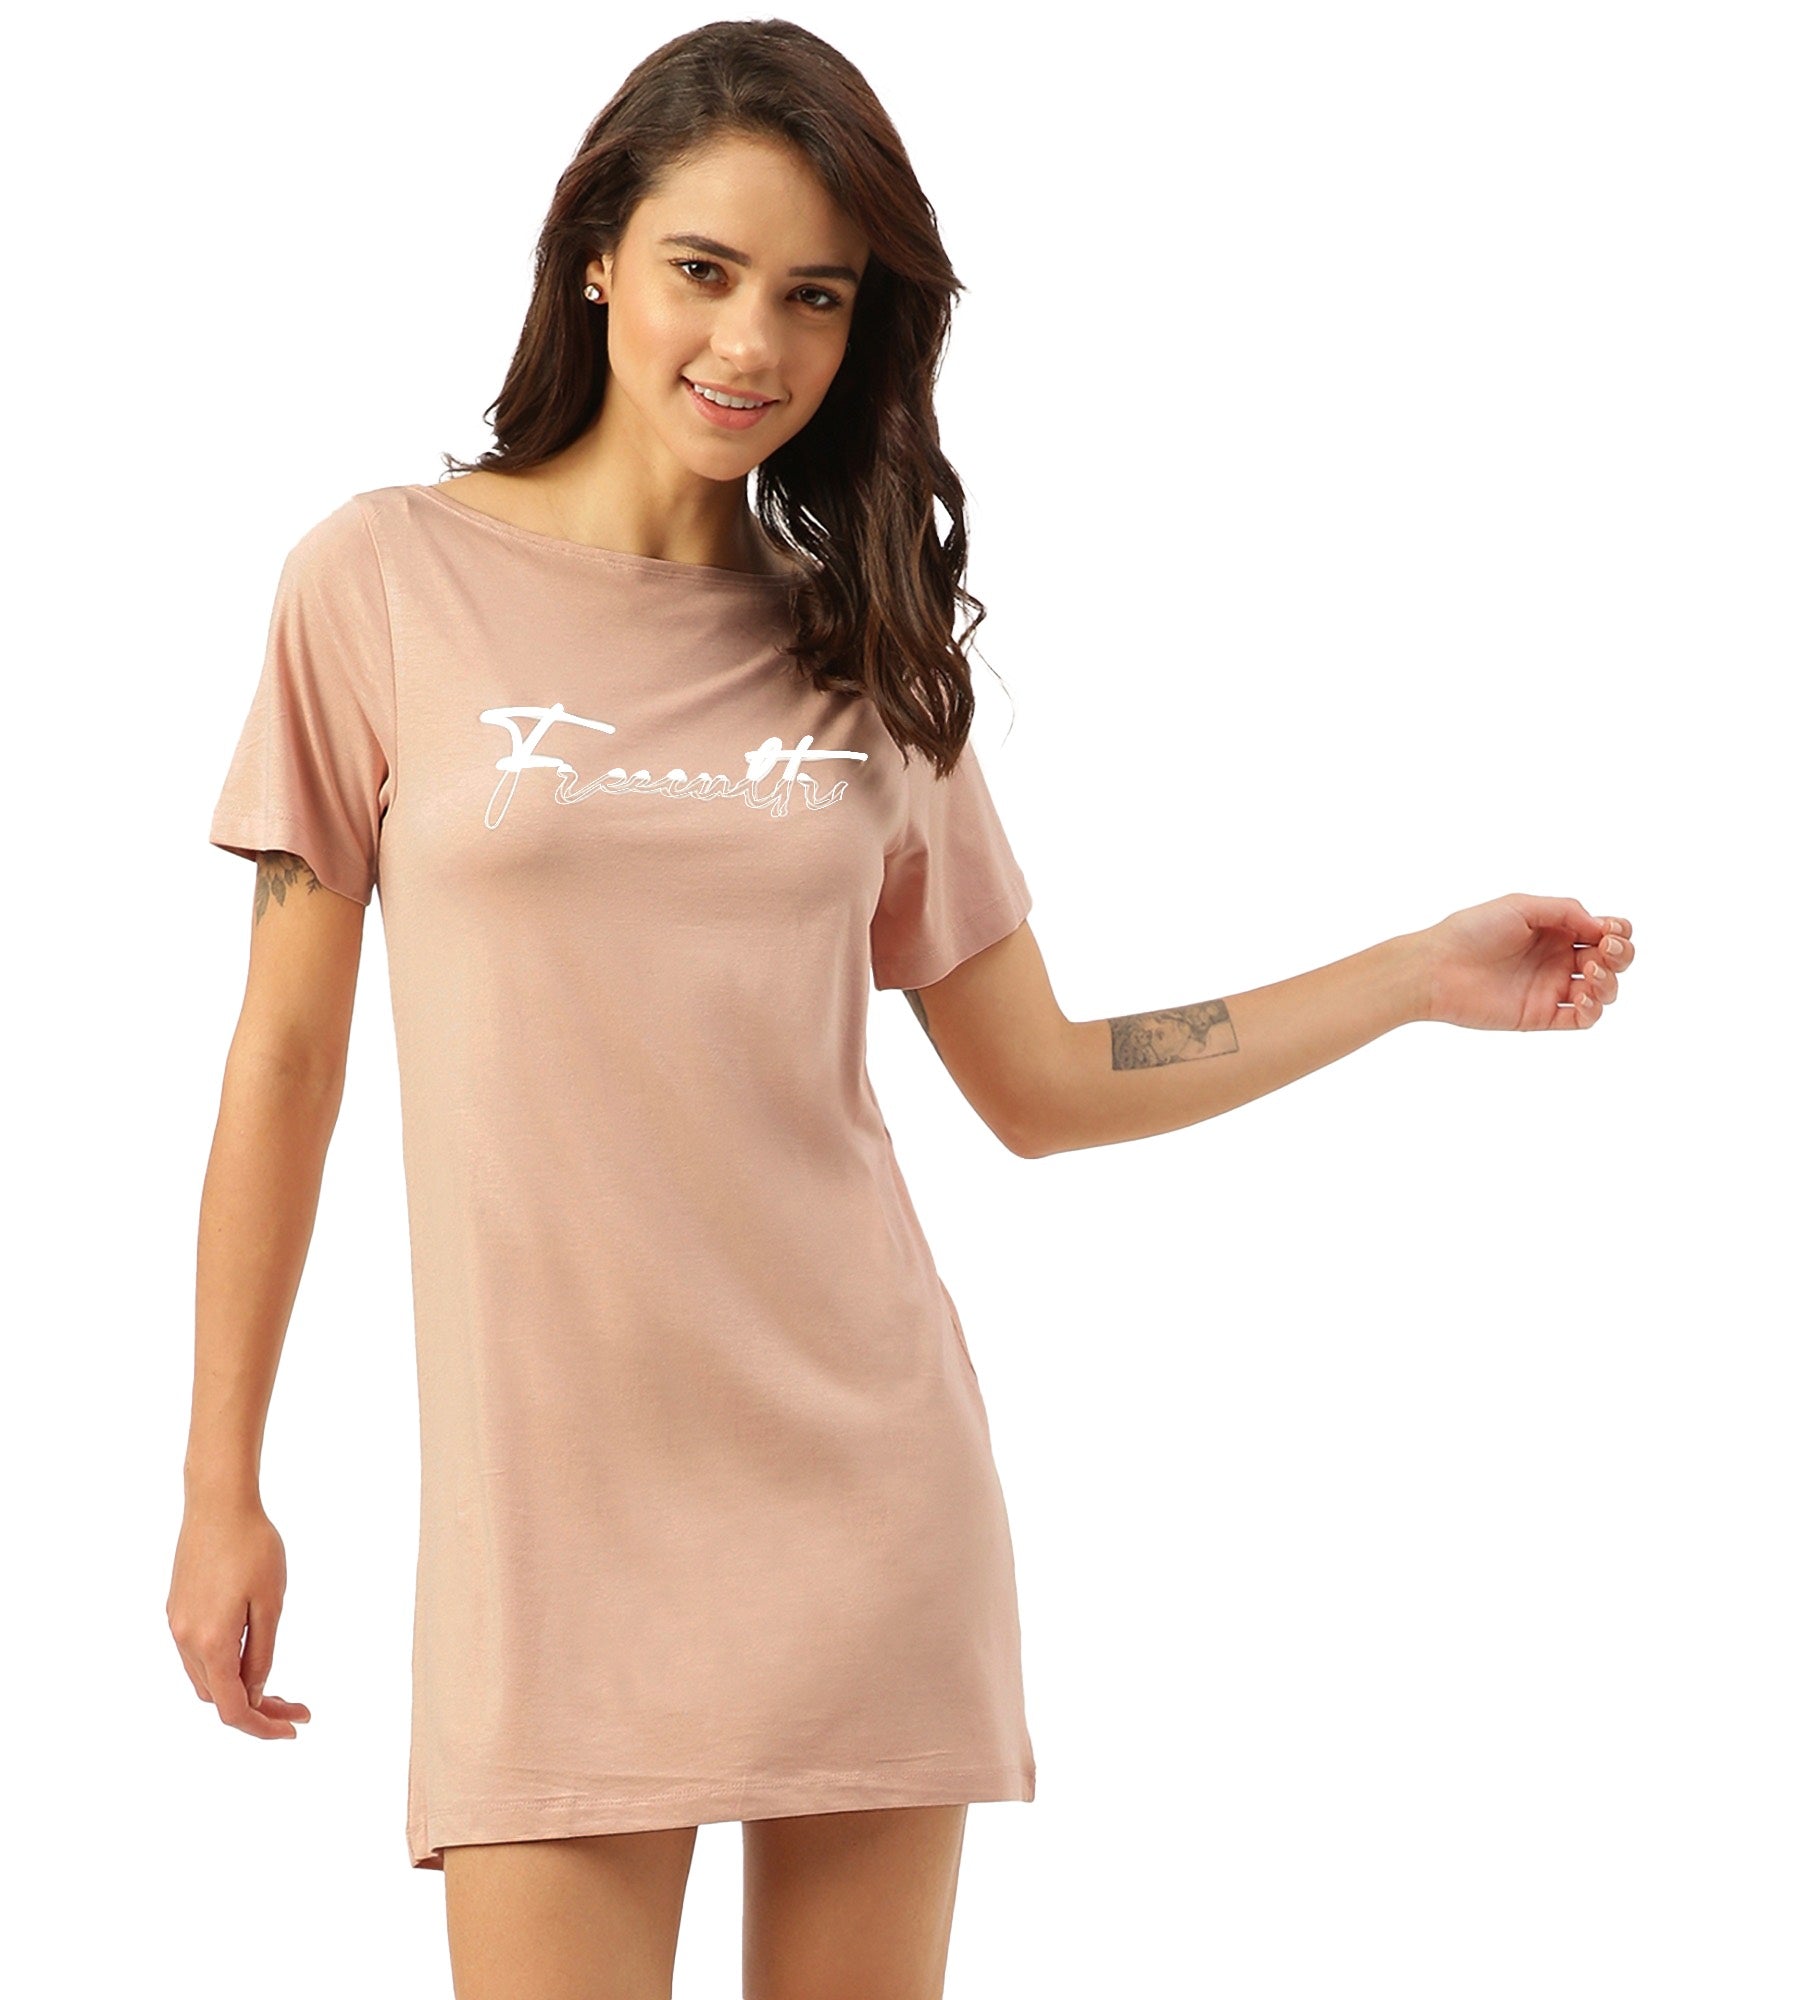 Twin Skin Women's T-shirt Dress (Pack of 2)